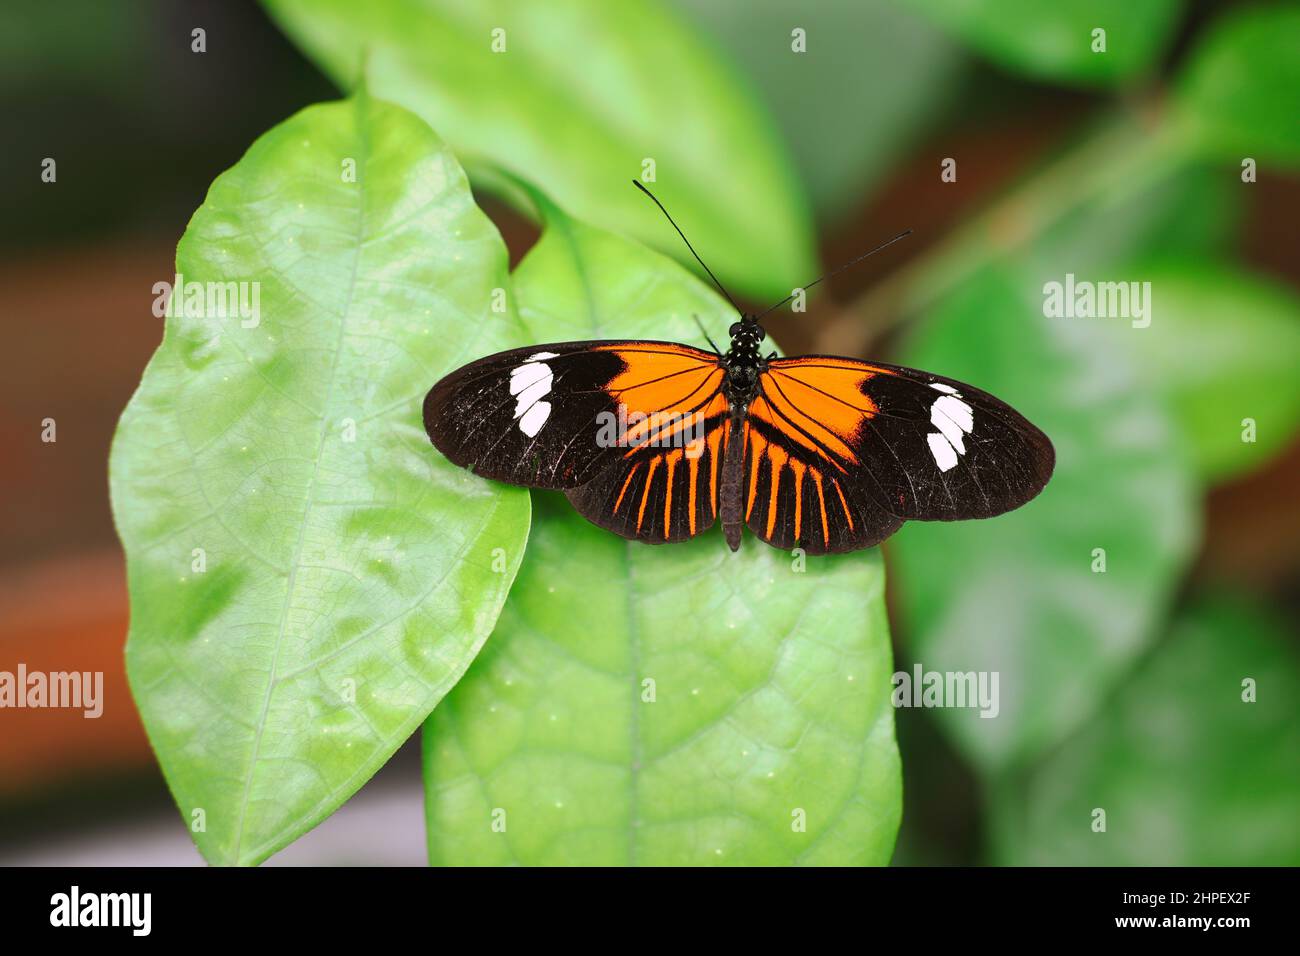 Vista dorsal de la mariposa del Postman sobre la hoja verde. Posman común de insectos neotropicales (Heliconius Melpomene). Foto de stock